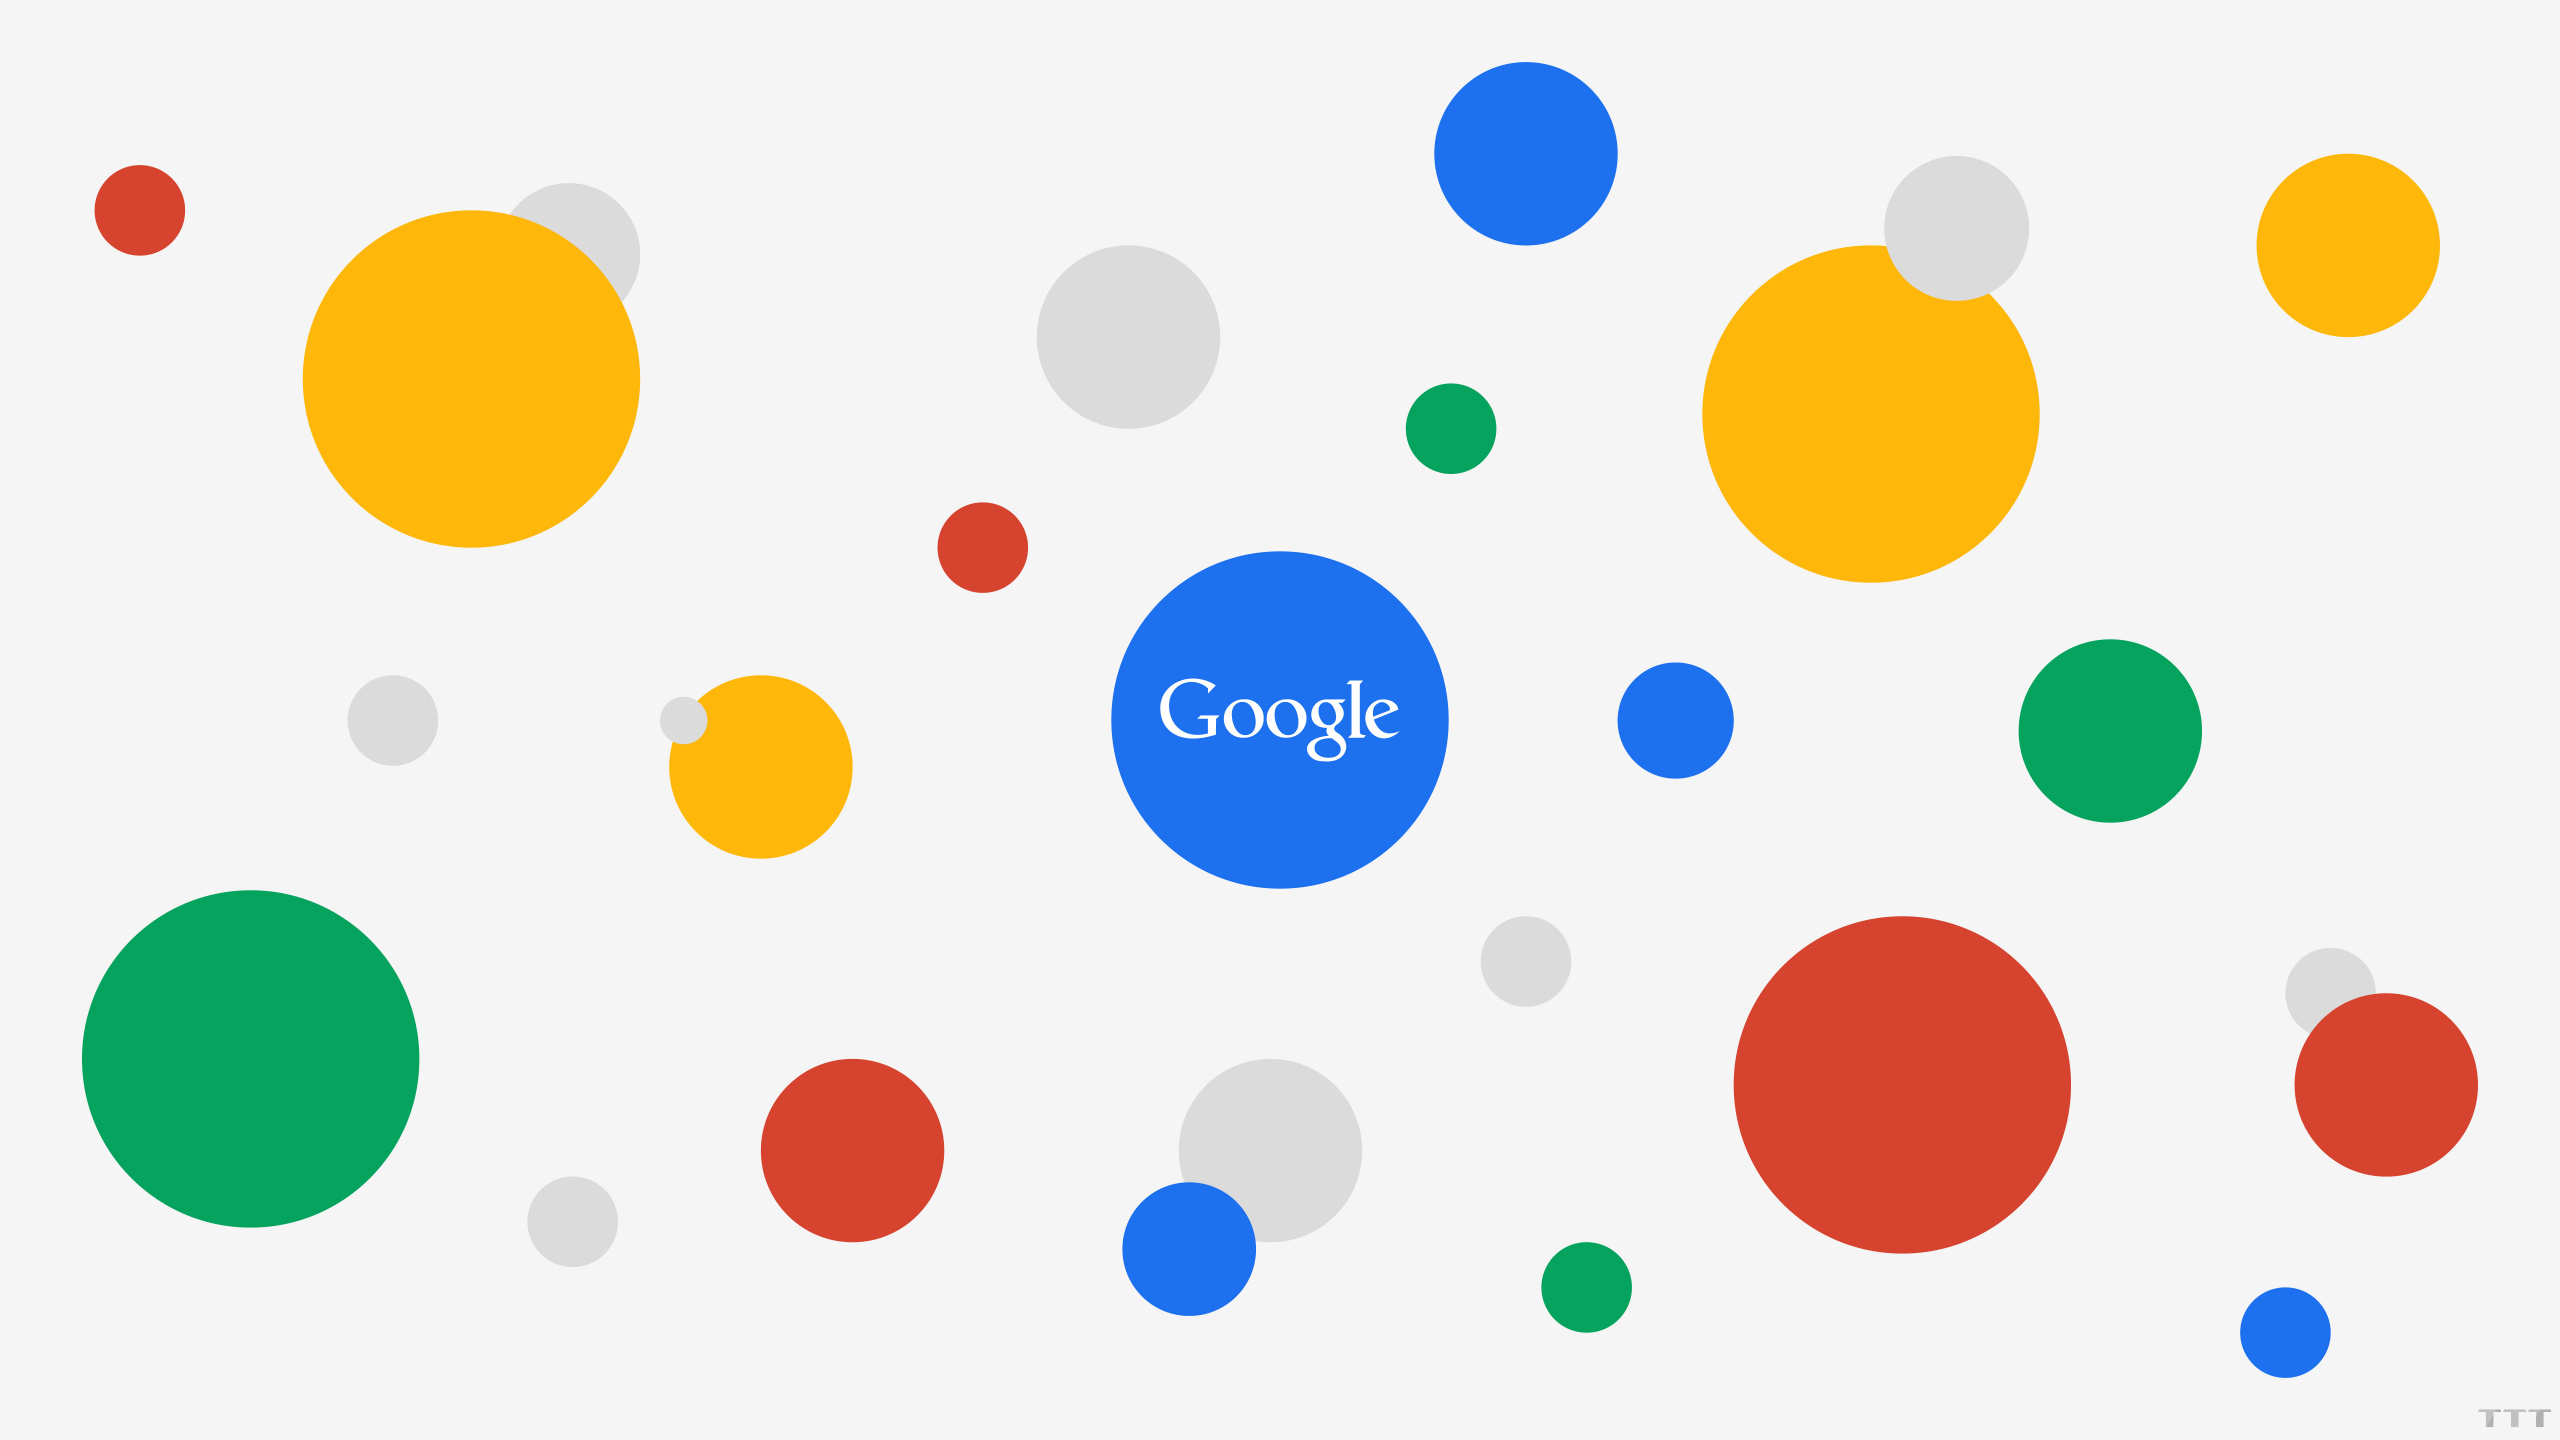 Google, Google-Anzeigen, Internet, Muster, Gelb. Wallpaper in 2560x1440 Resolution